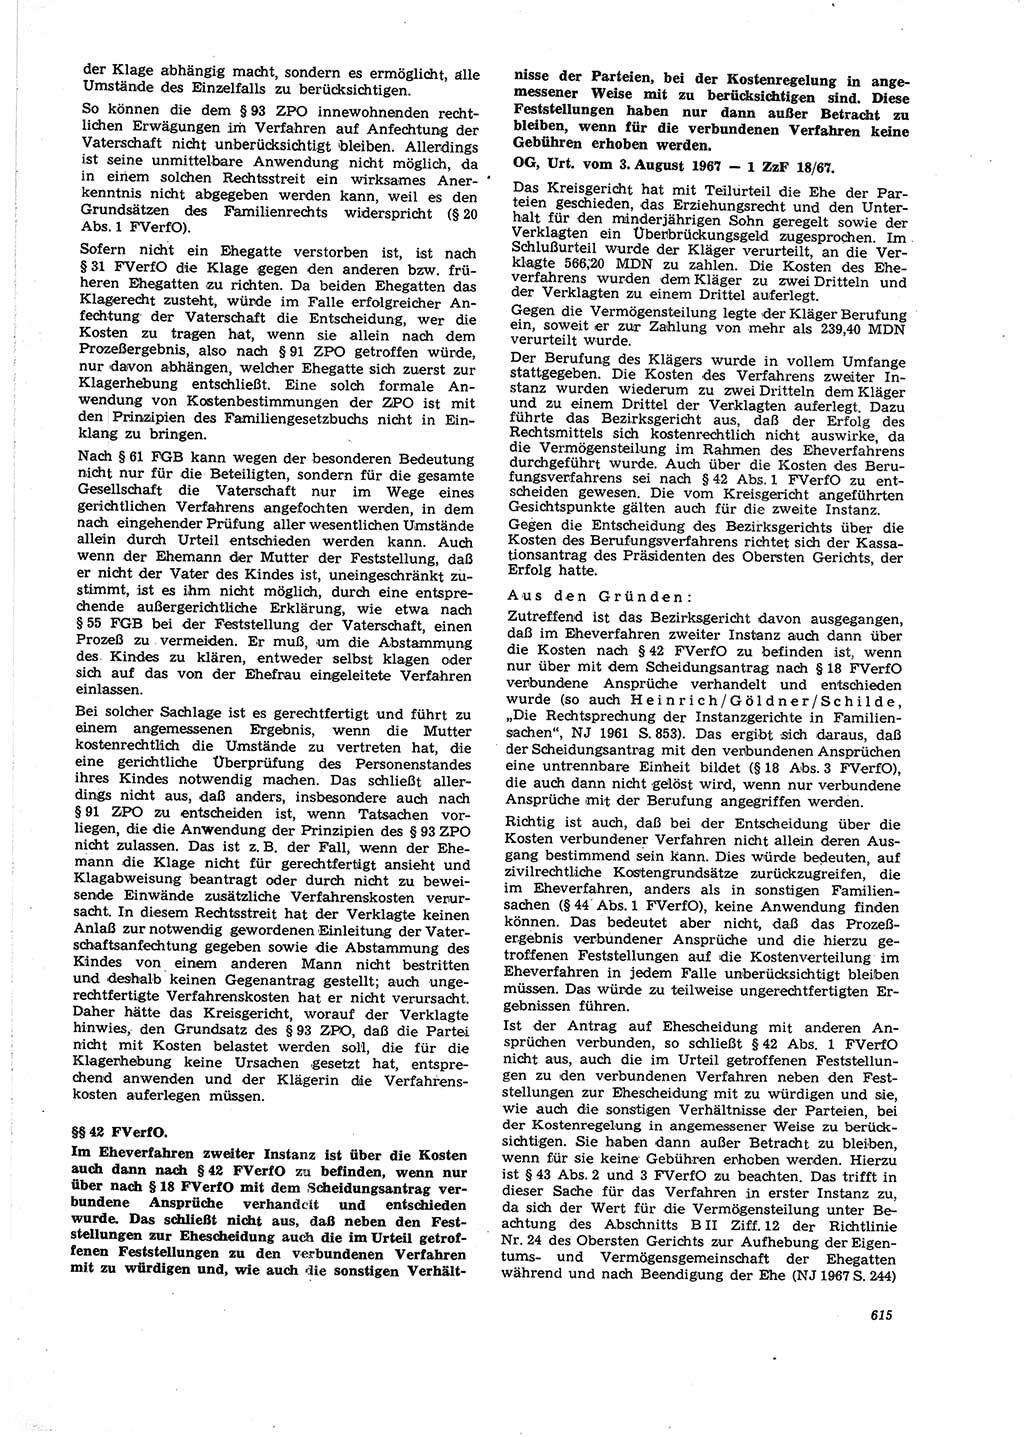 Neue Justiz (NJ), Zeitschrift für Recht und Rechtswissenschaft [Deutsche Demokratische Republik (DDR)], 21. Jahrgang 1967, Seite 615 (NJ DDR 1967, S. 615)